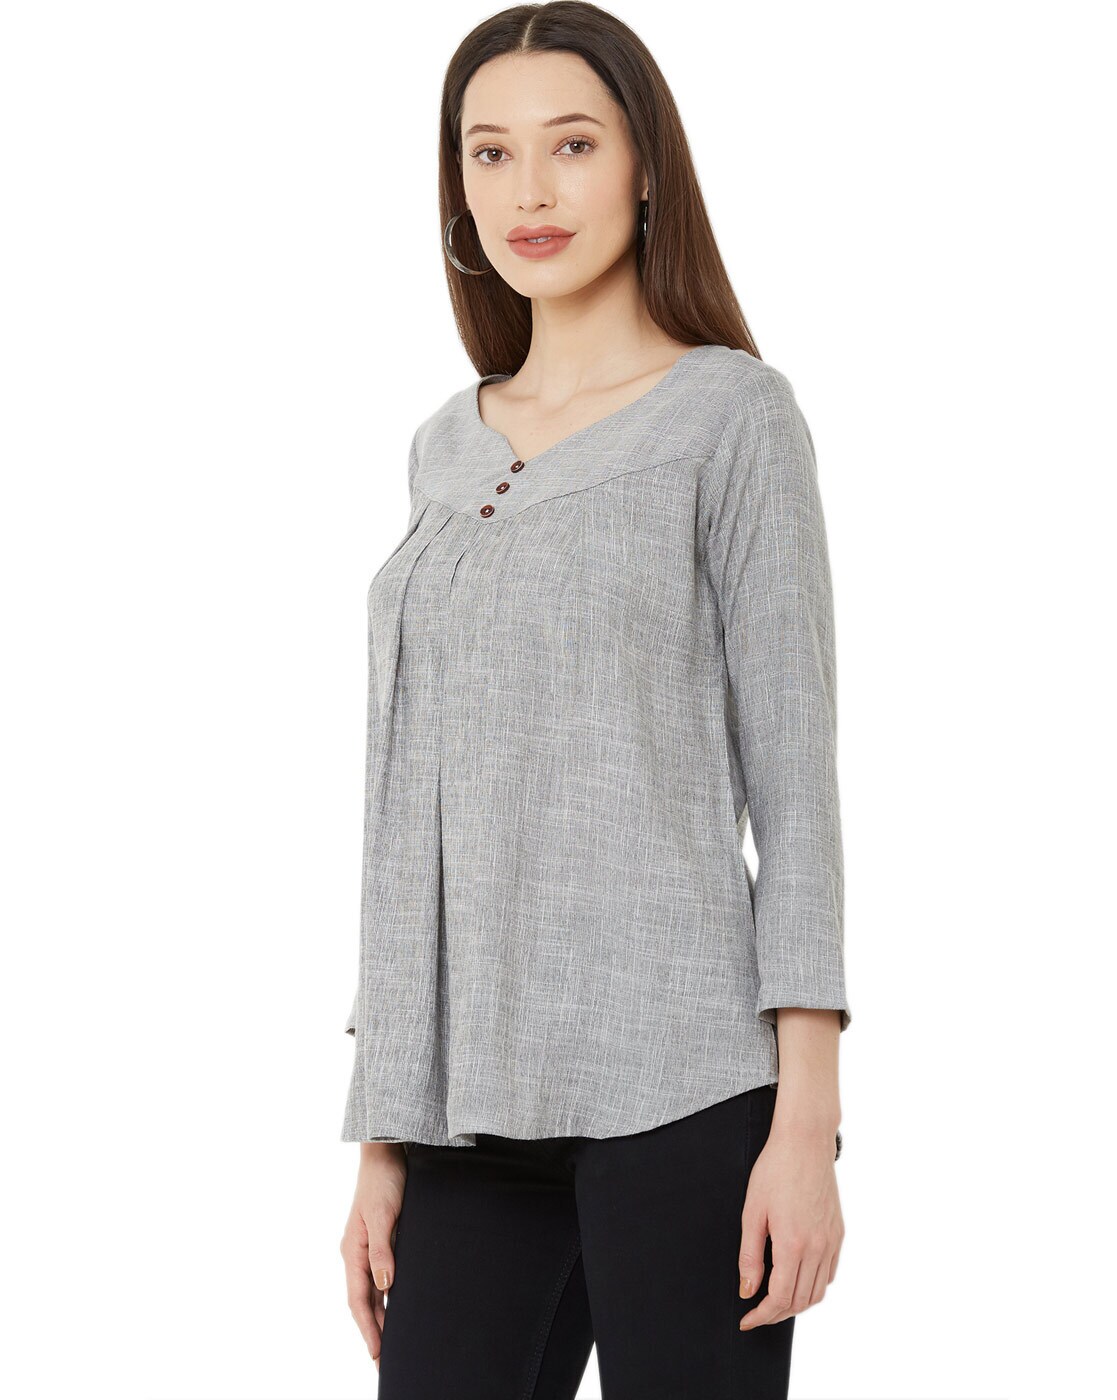 Buy Grey Tops for Women by Go-4 It Online | Ajio.com